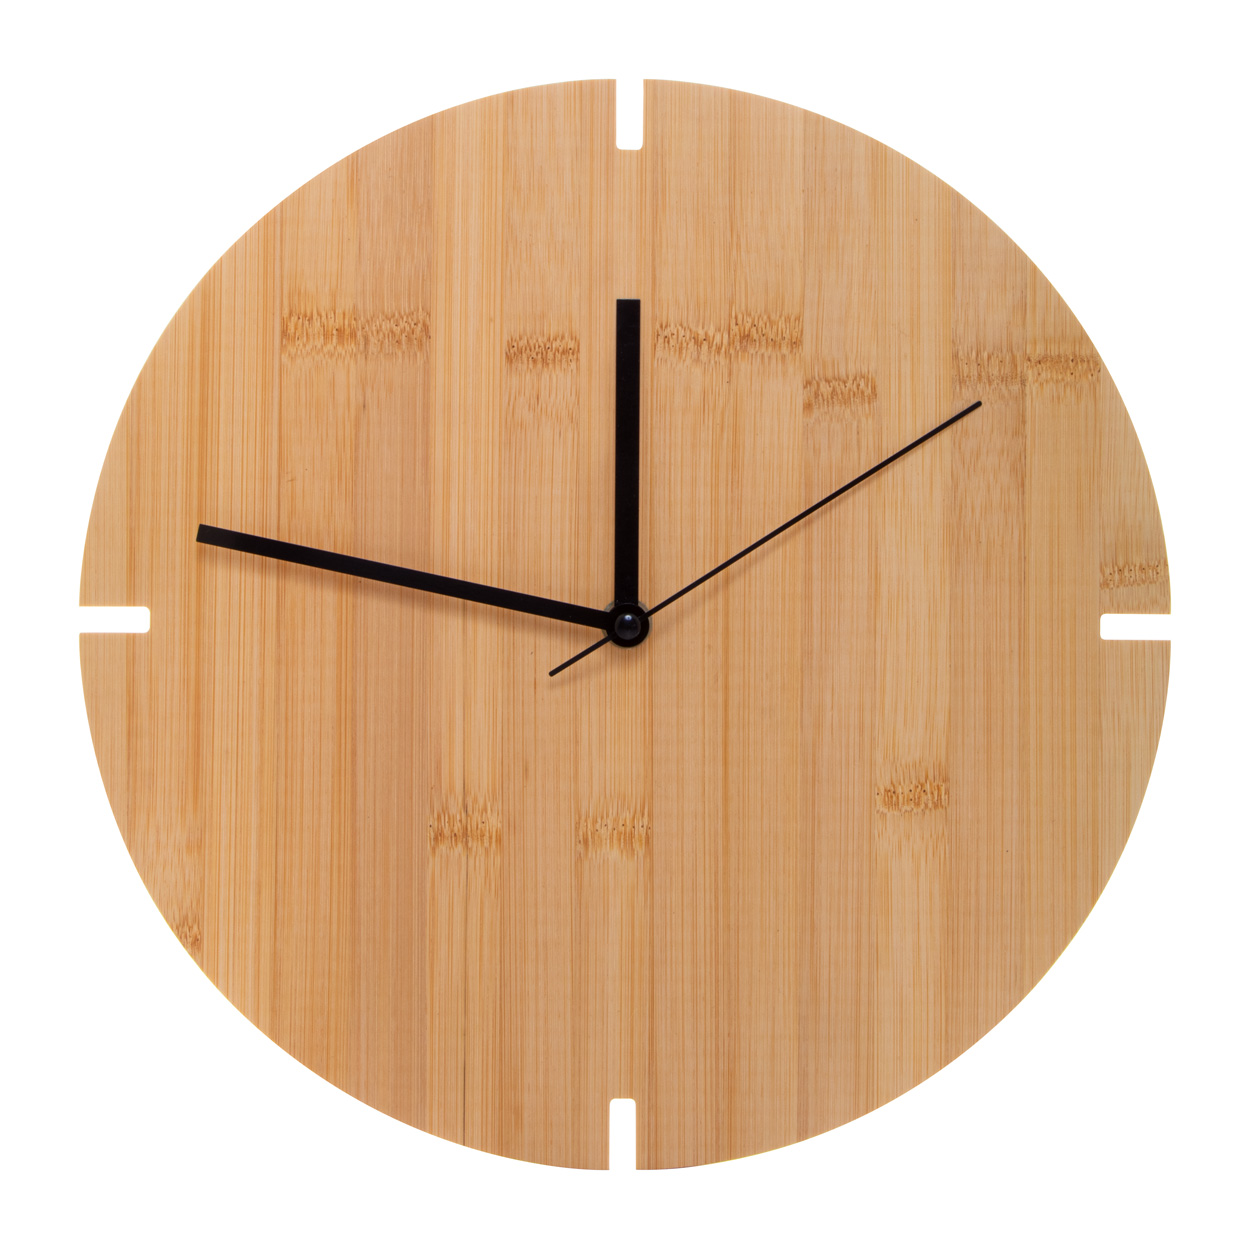 Bamboo wall clock TOKEI - natural